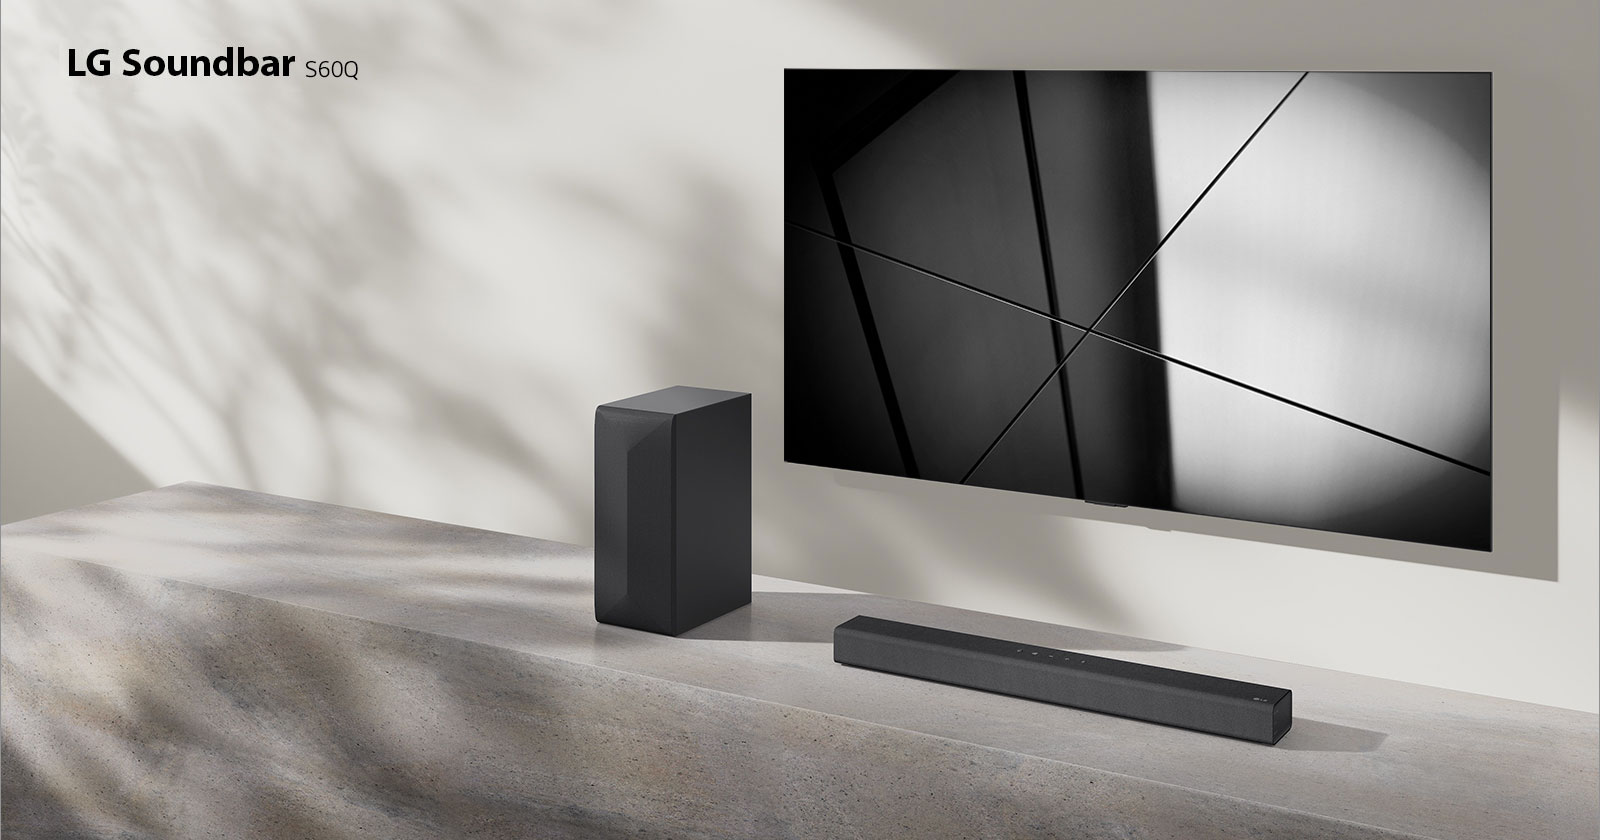 Soundbar LG S60Q i telewizor LG stoją razem w pokoju dziennym. Telewizor jest włączony i wyświetla geometryczny wzór.